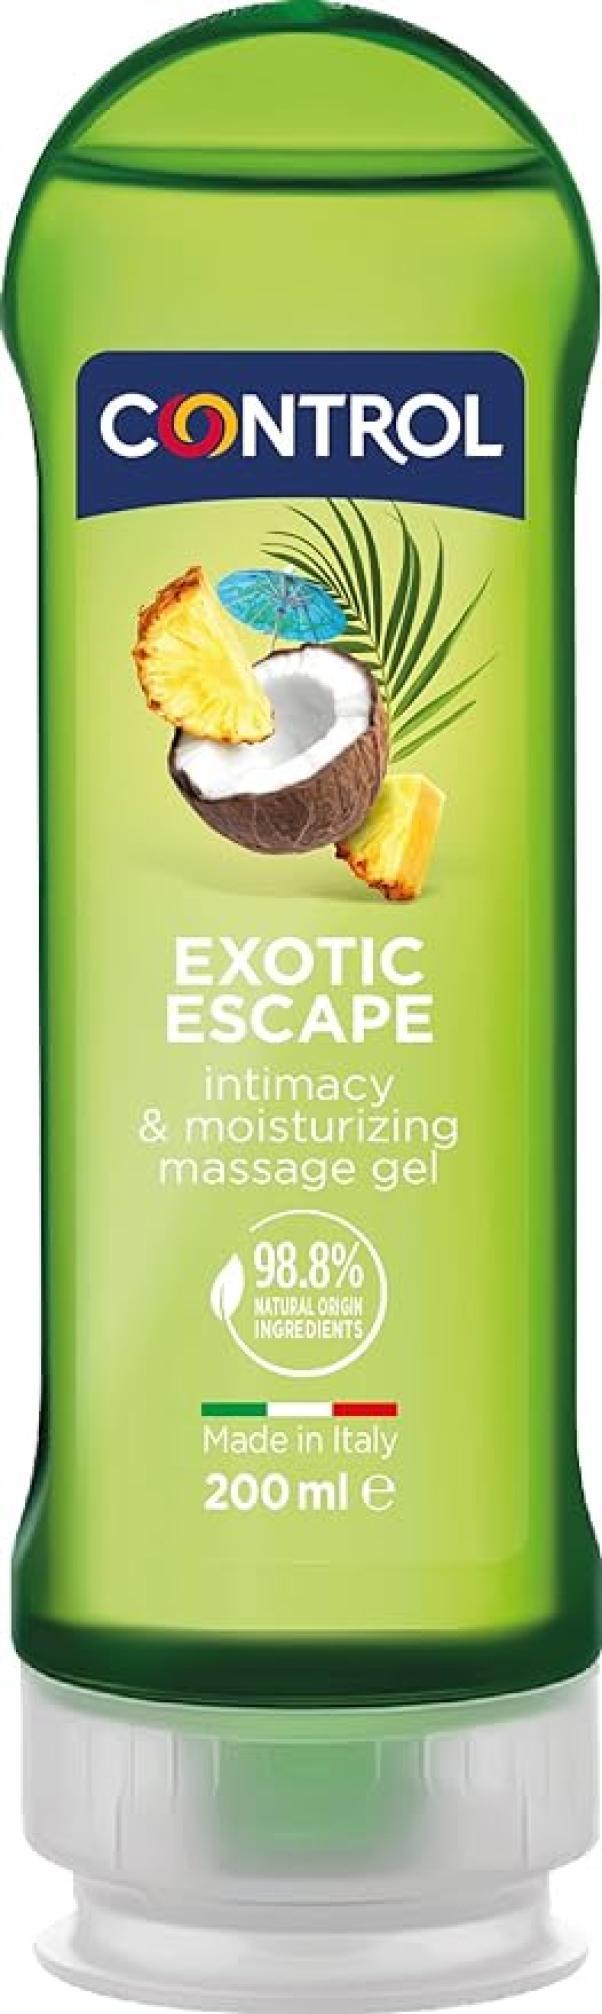 Gel massaggio 2 in 1 Control Exotic Escape 200ml